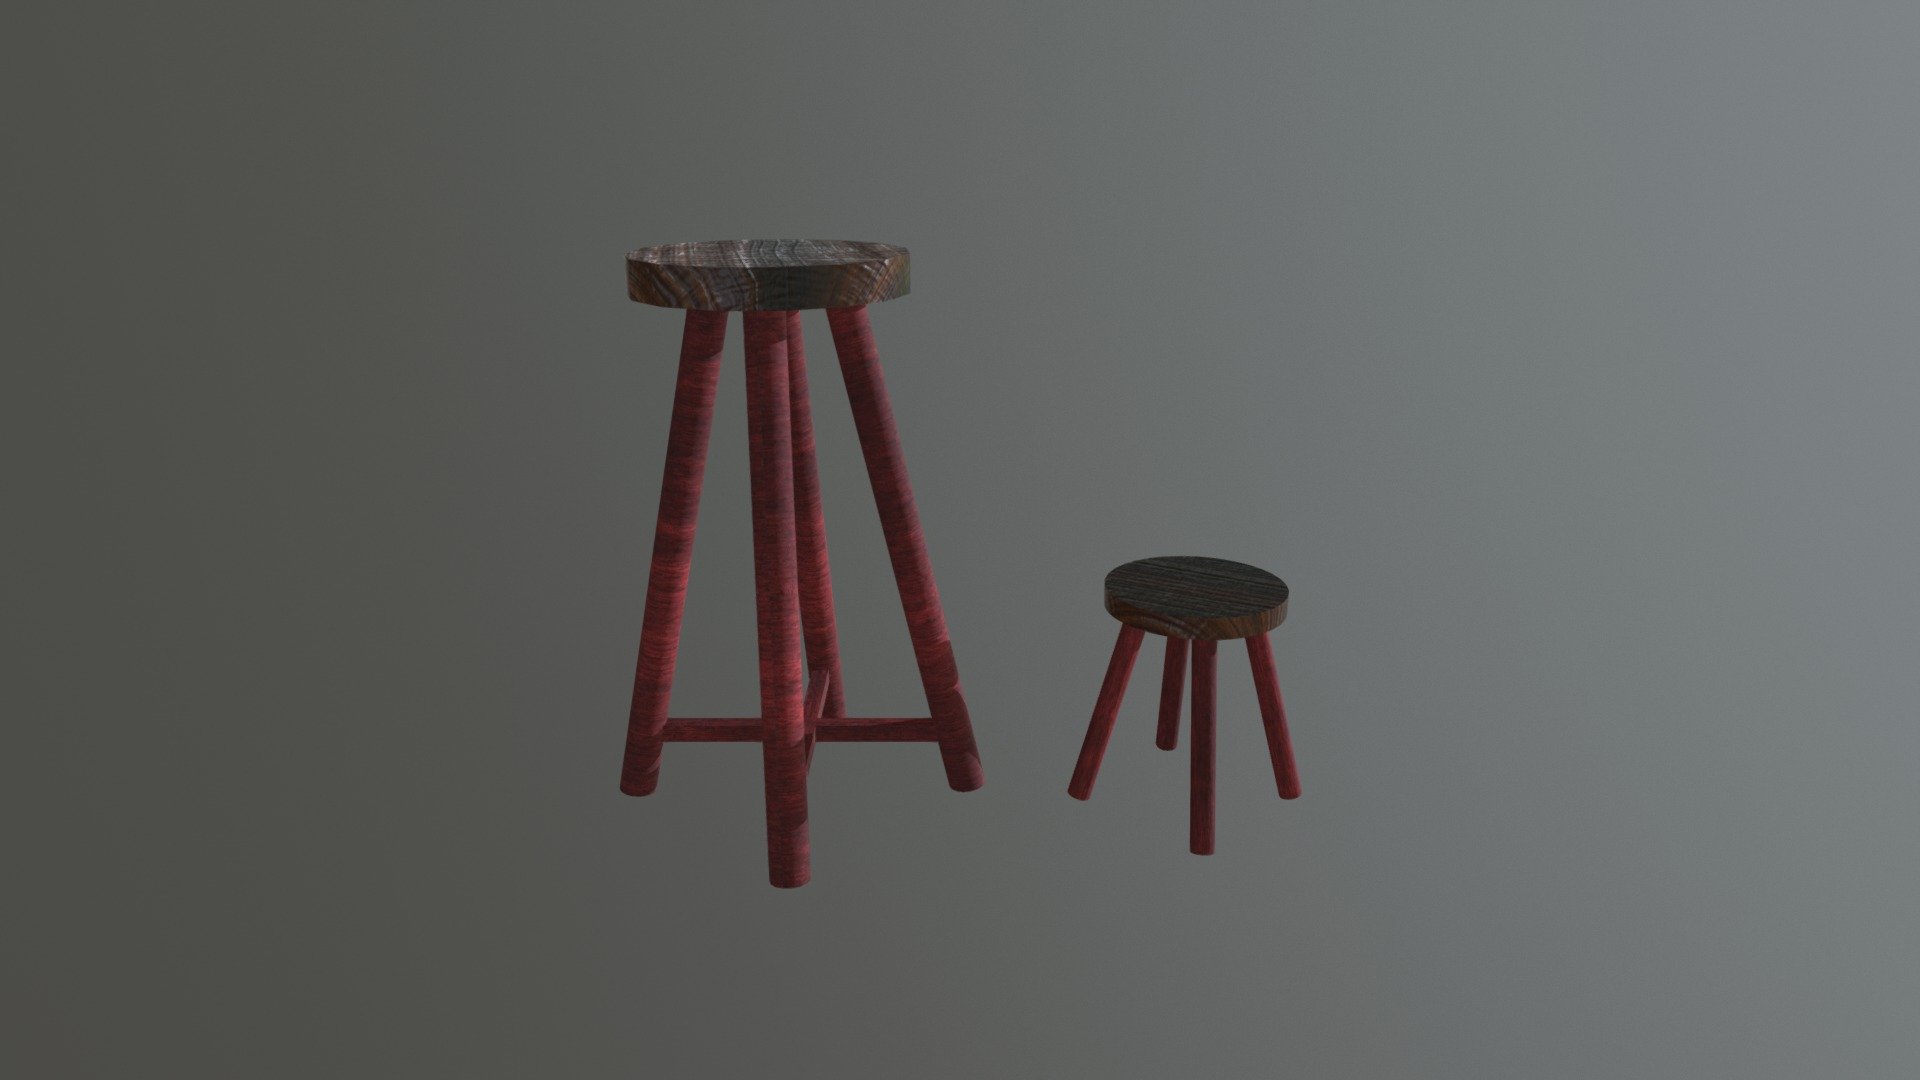 stools - 3D model by Christel Mulder (@swekjes) [8bf80ce] - Sketchfab